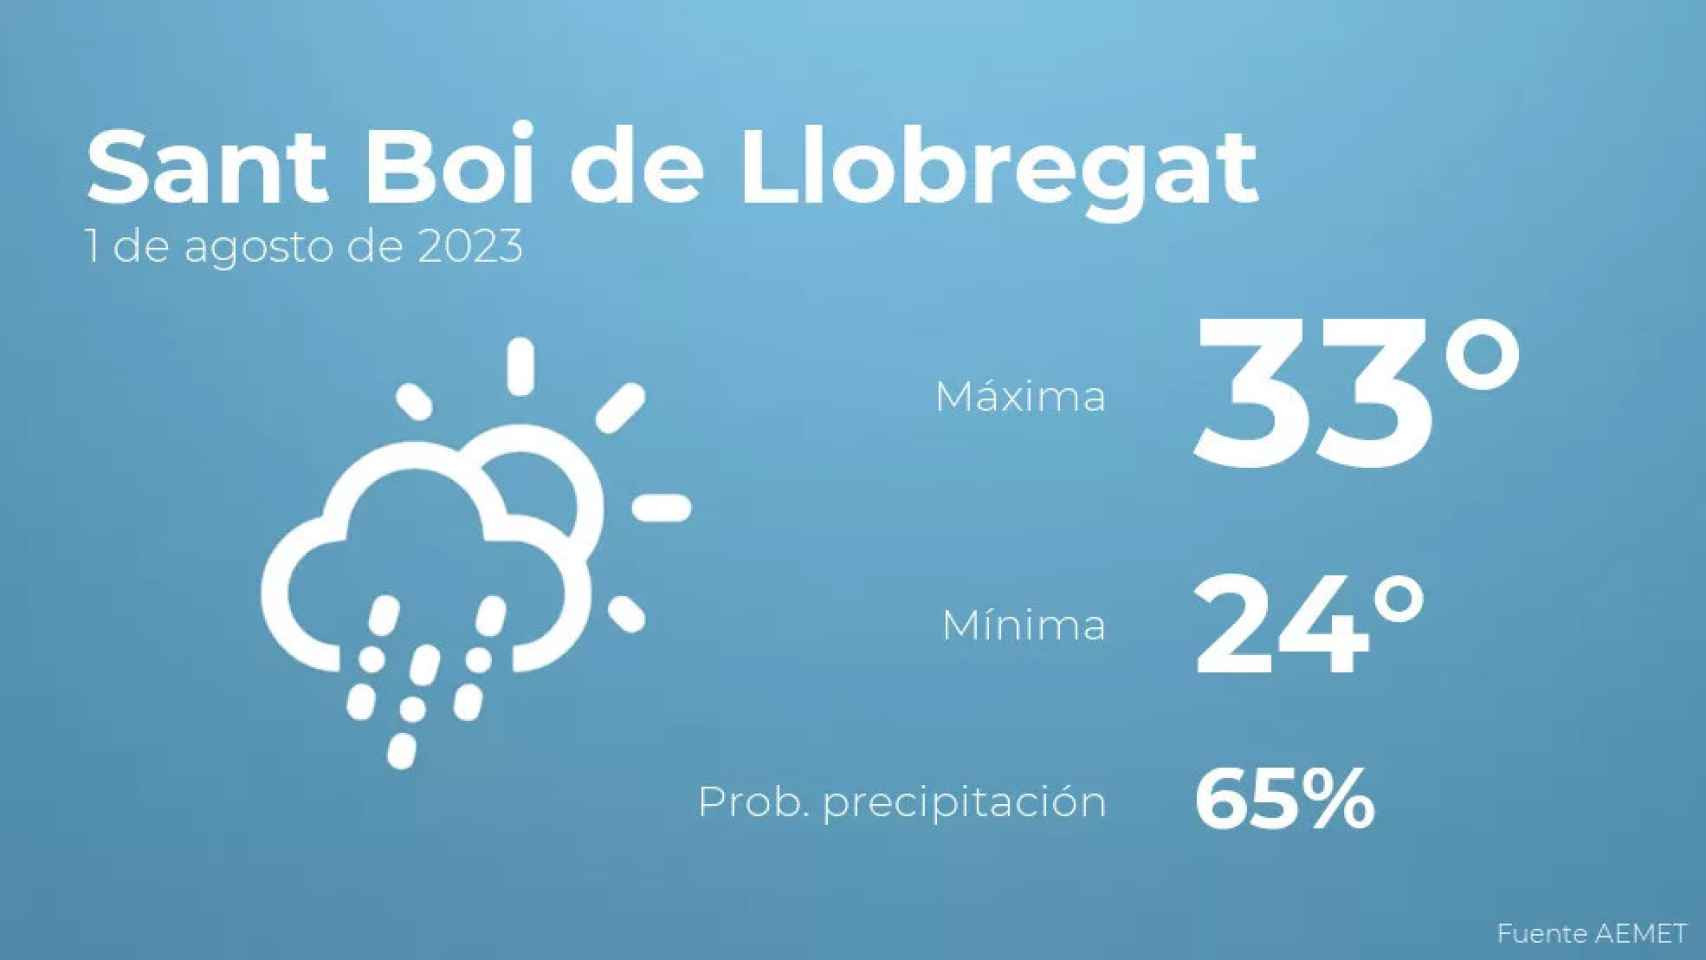 weather?weatherid=44&tempmax=33&tempmin=24&prep=65&city=Sant+Boi+de+Llobregat&date=1+de+agosto+de+2023&client=CRG&data provider=aemet